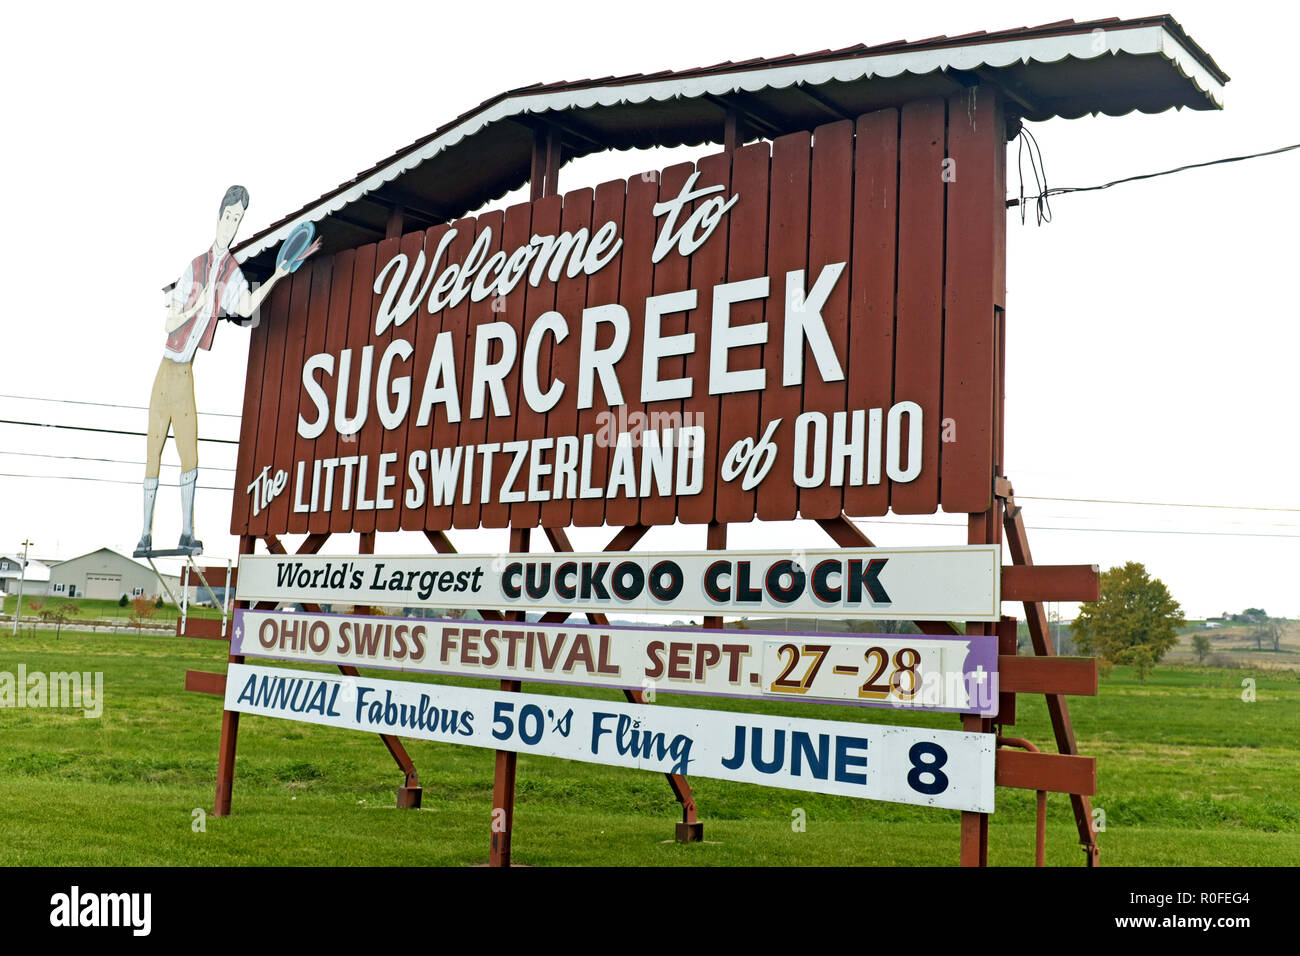 Le célèbre signe « Bienvenue à Sugarcreek » accueille les visiteurs de cette populaire communauté Amish à Sugarcreek, Ohio, États-Unis. Banque D'Images